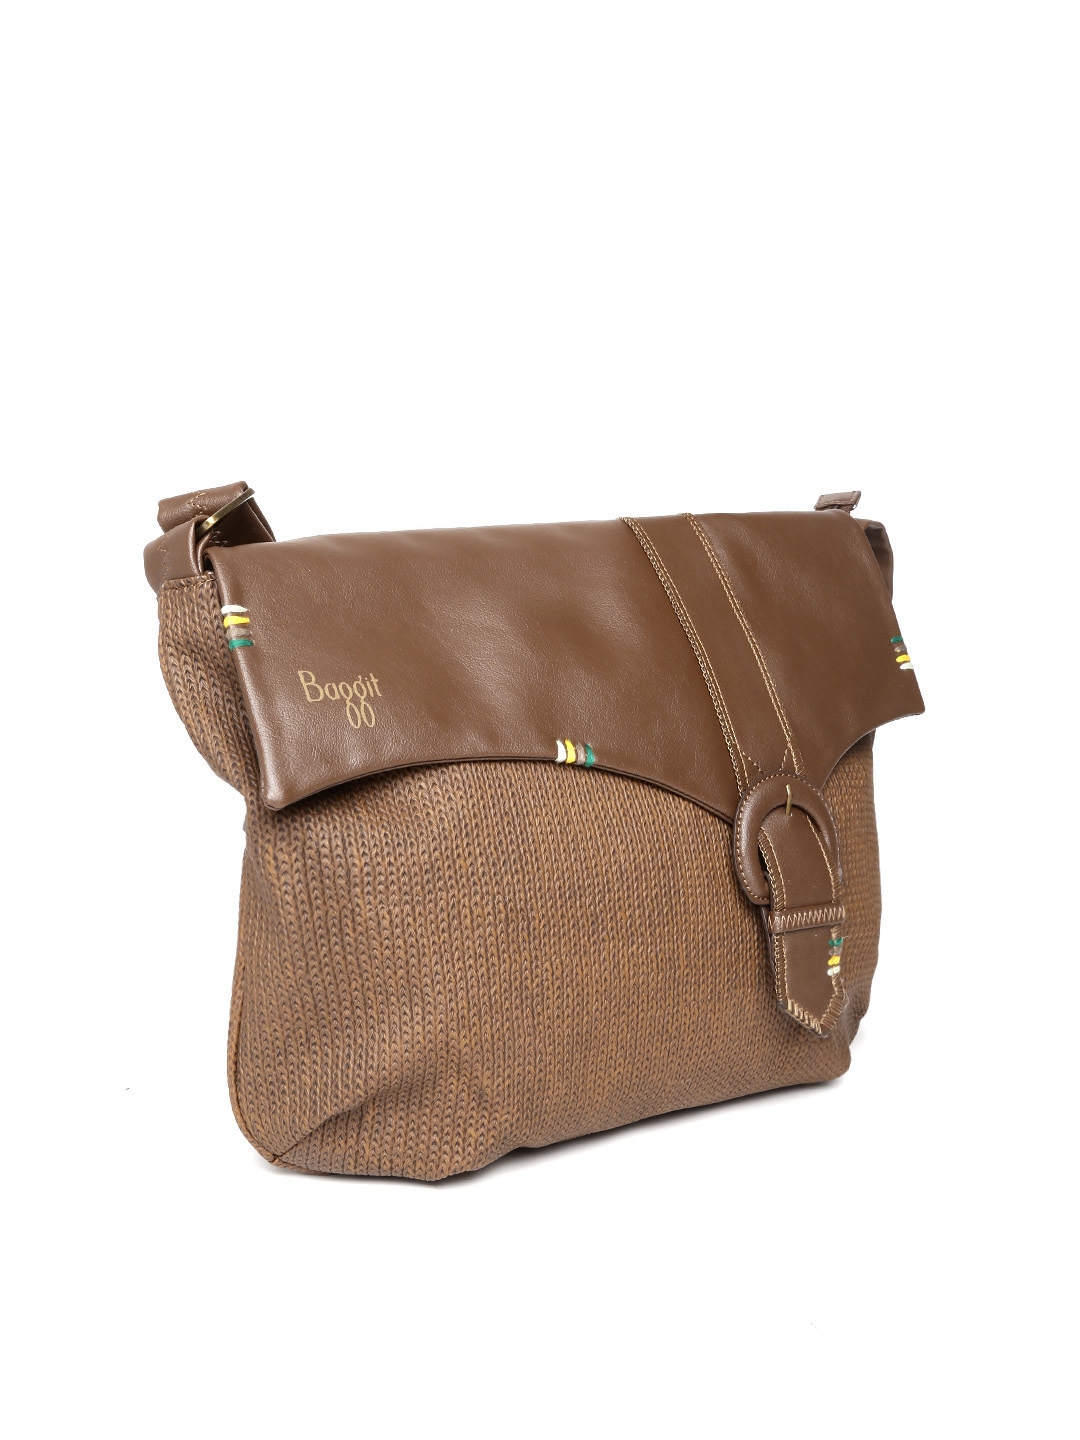 Myntra Baggit Brown Sling Bag 700179 | Buy Myntra Baggit Handbags at best price online. All ...